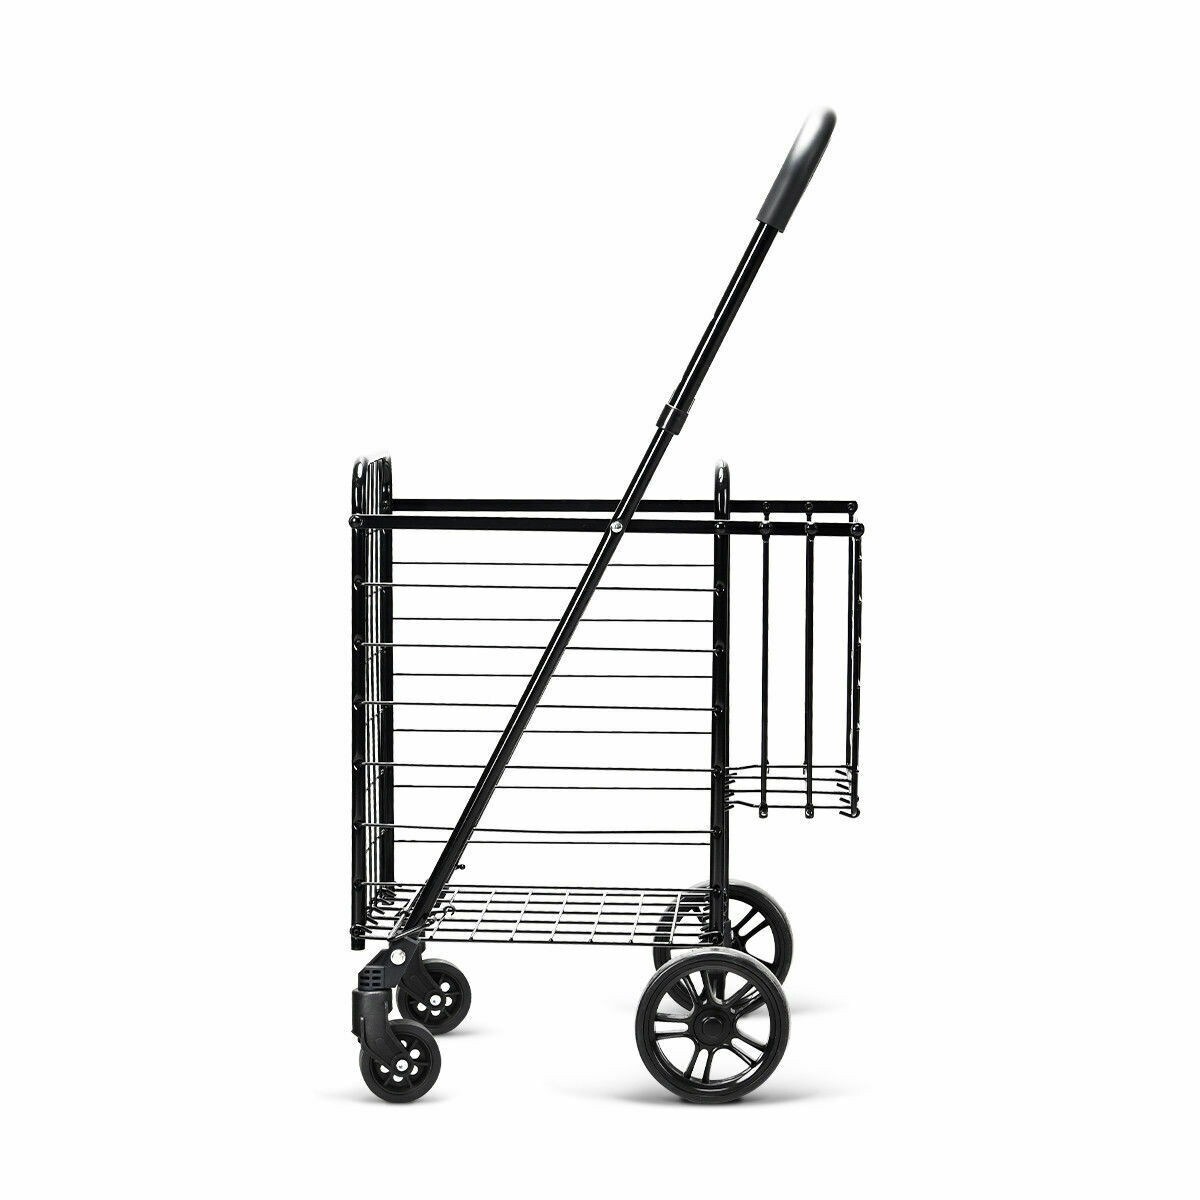 Chaoshihui Black Shopping Cart Handle Covers: Anti Rubber Trolley